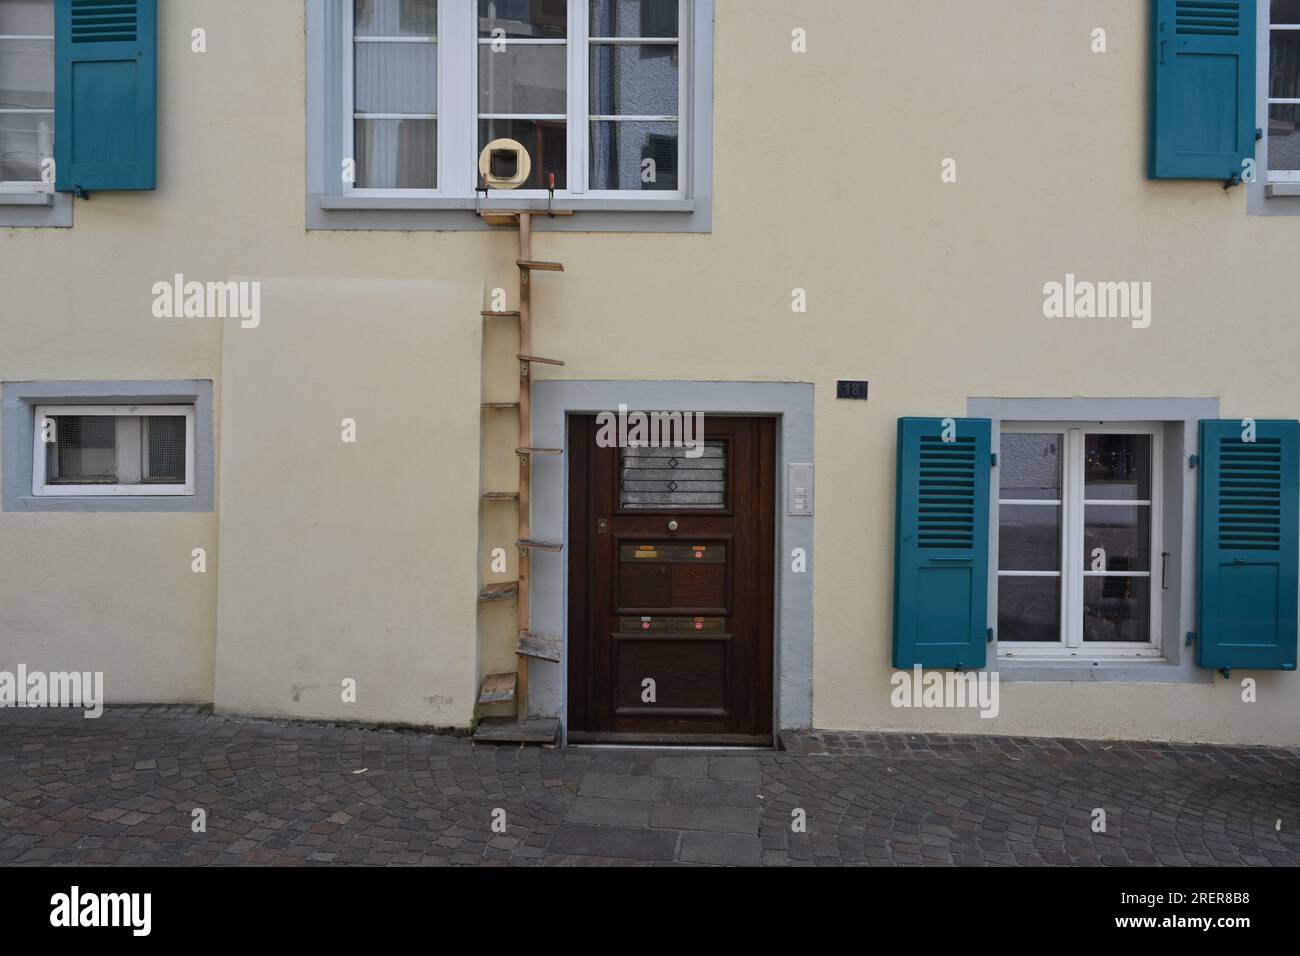 Ein Haus mit einem Fenster mit Eingang für eine Katze und einer hölzernen vertikalen Leiter. Stockfoto